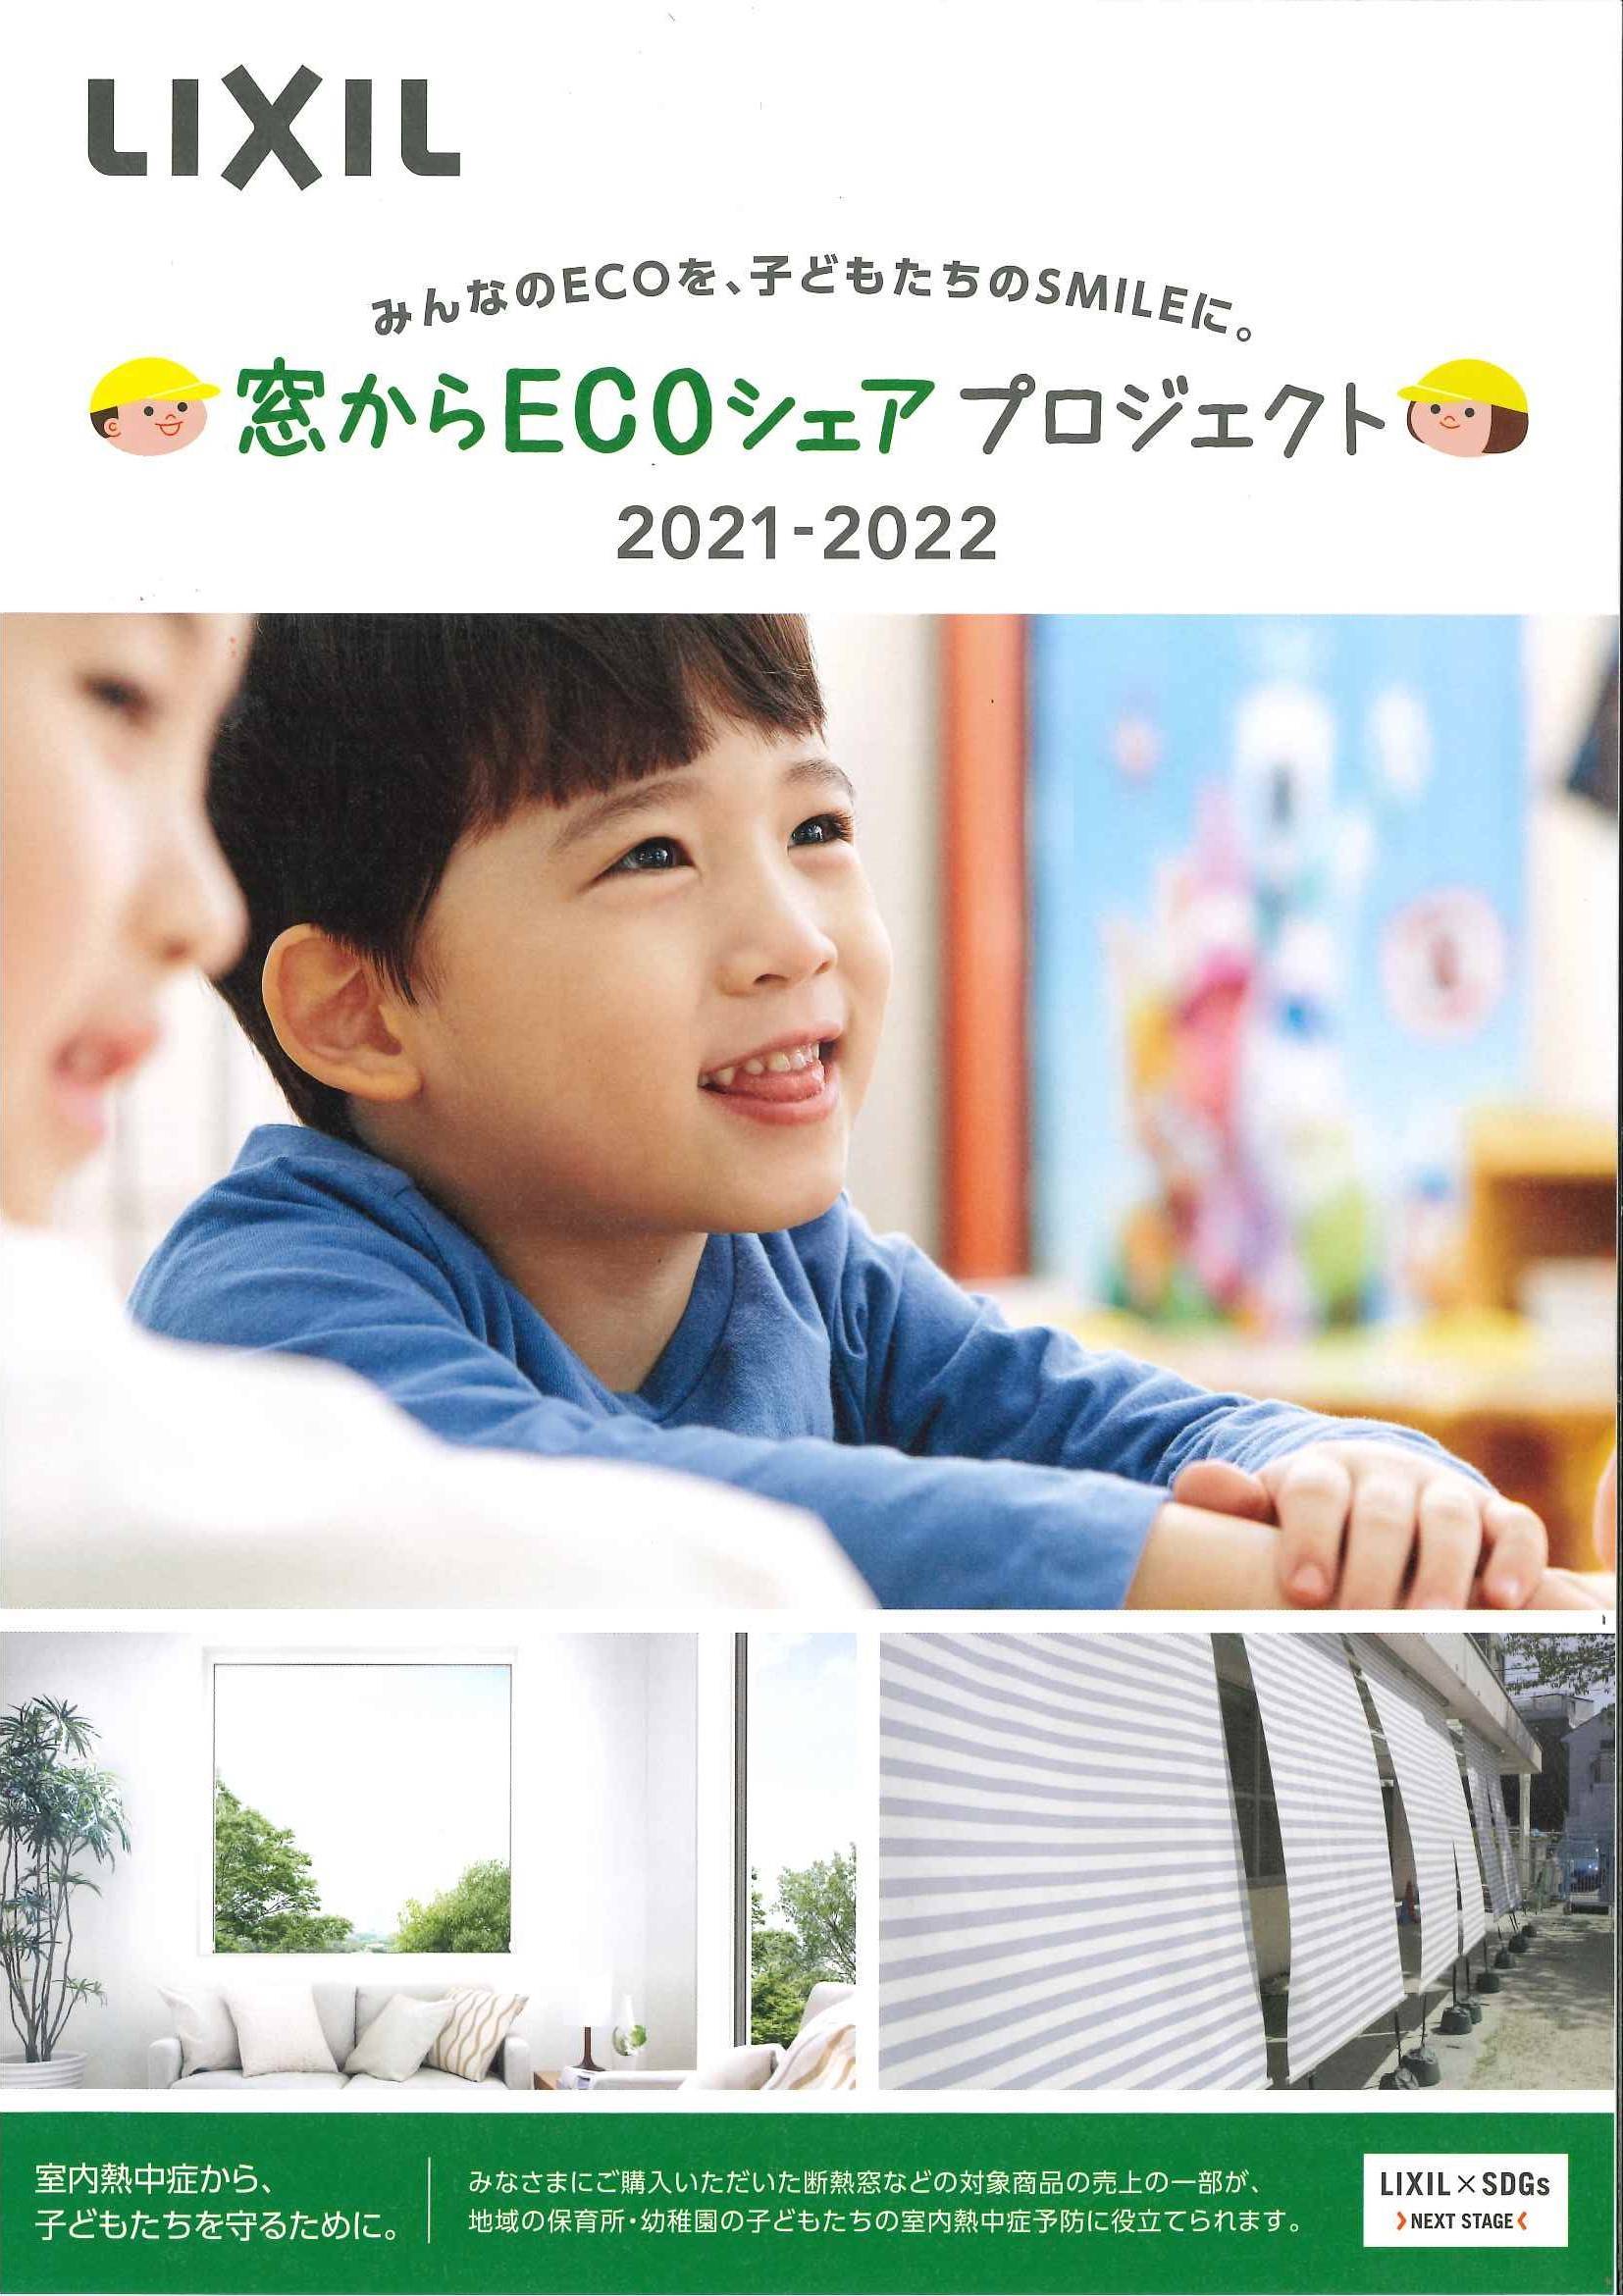 窓からECOシェアプロジェクト 横浜トーヨー住器のイベントキャンペーン 写真1